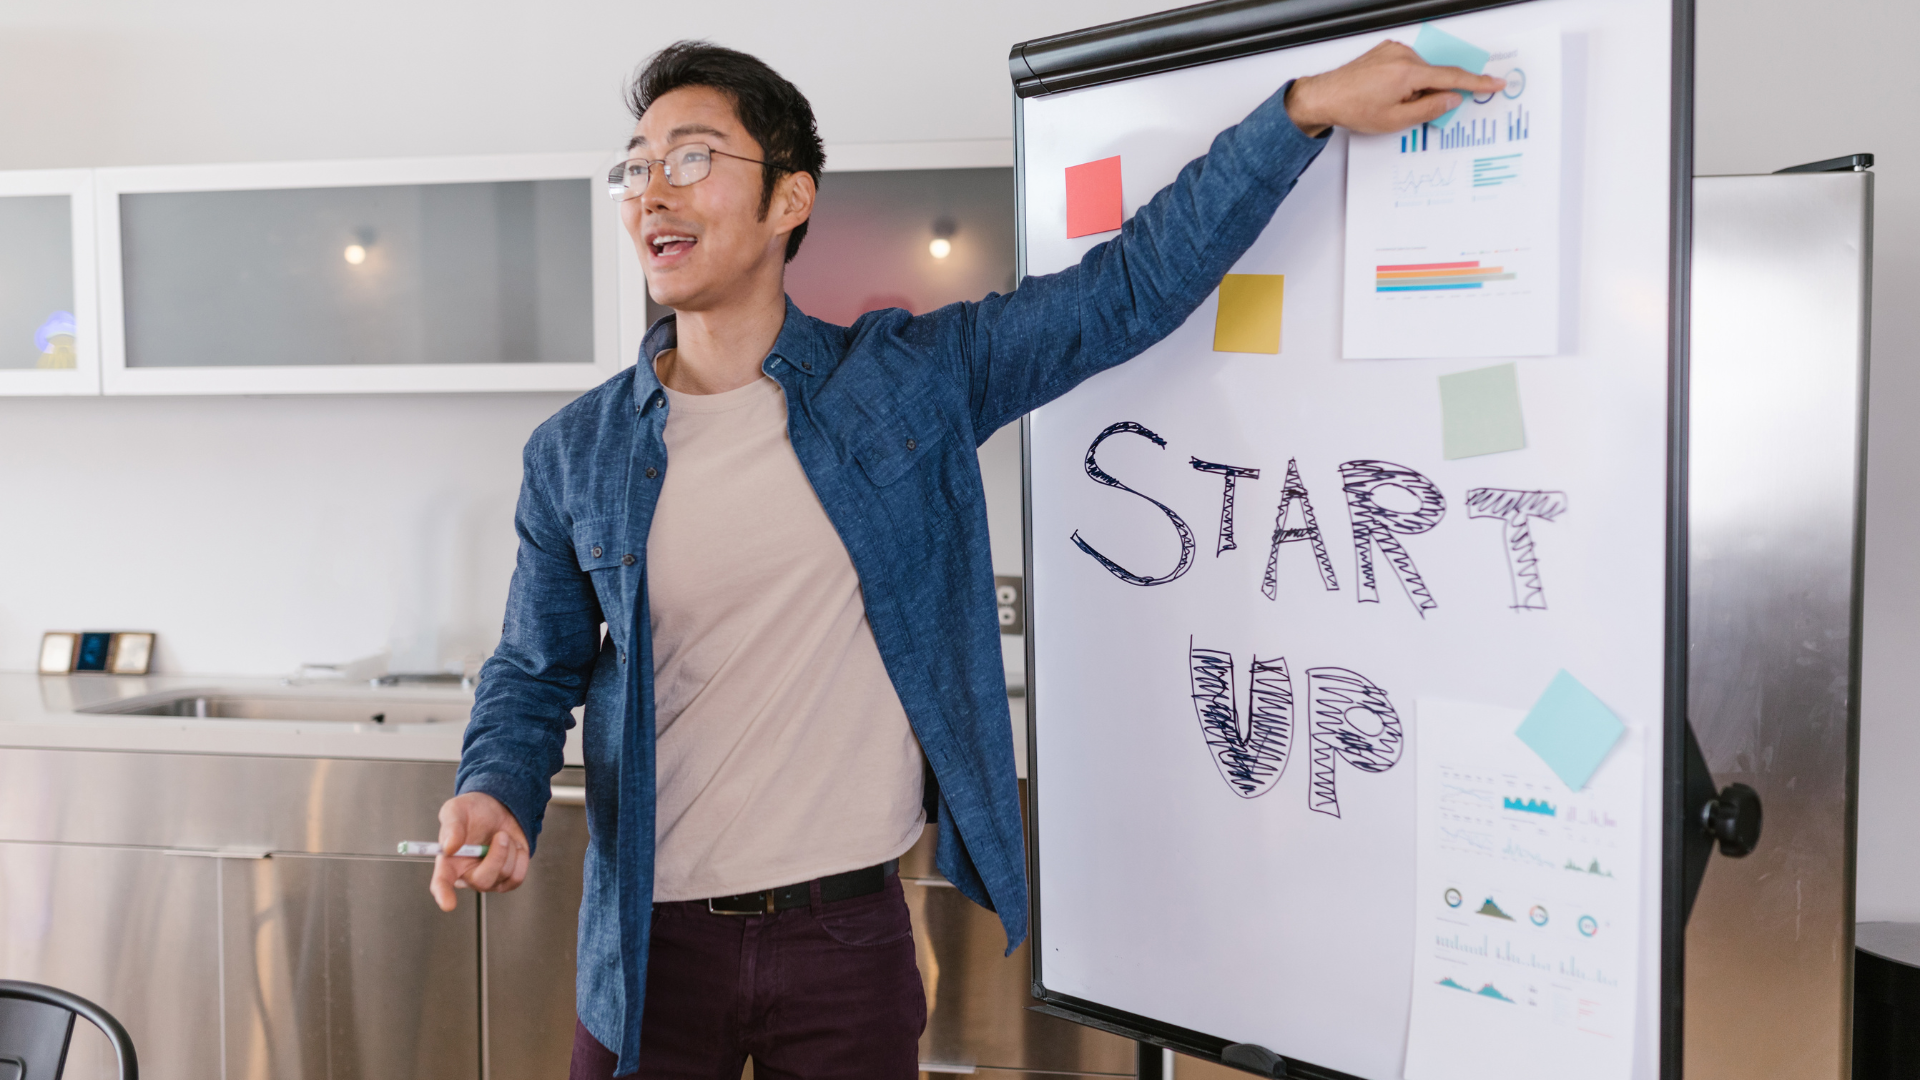 Qu'est-ce qu'une startup ? Votre cabinet comptable Mavrick revient sur la définition de la startup pour vous !